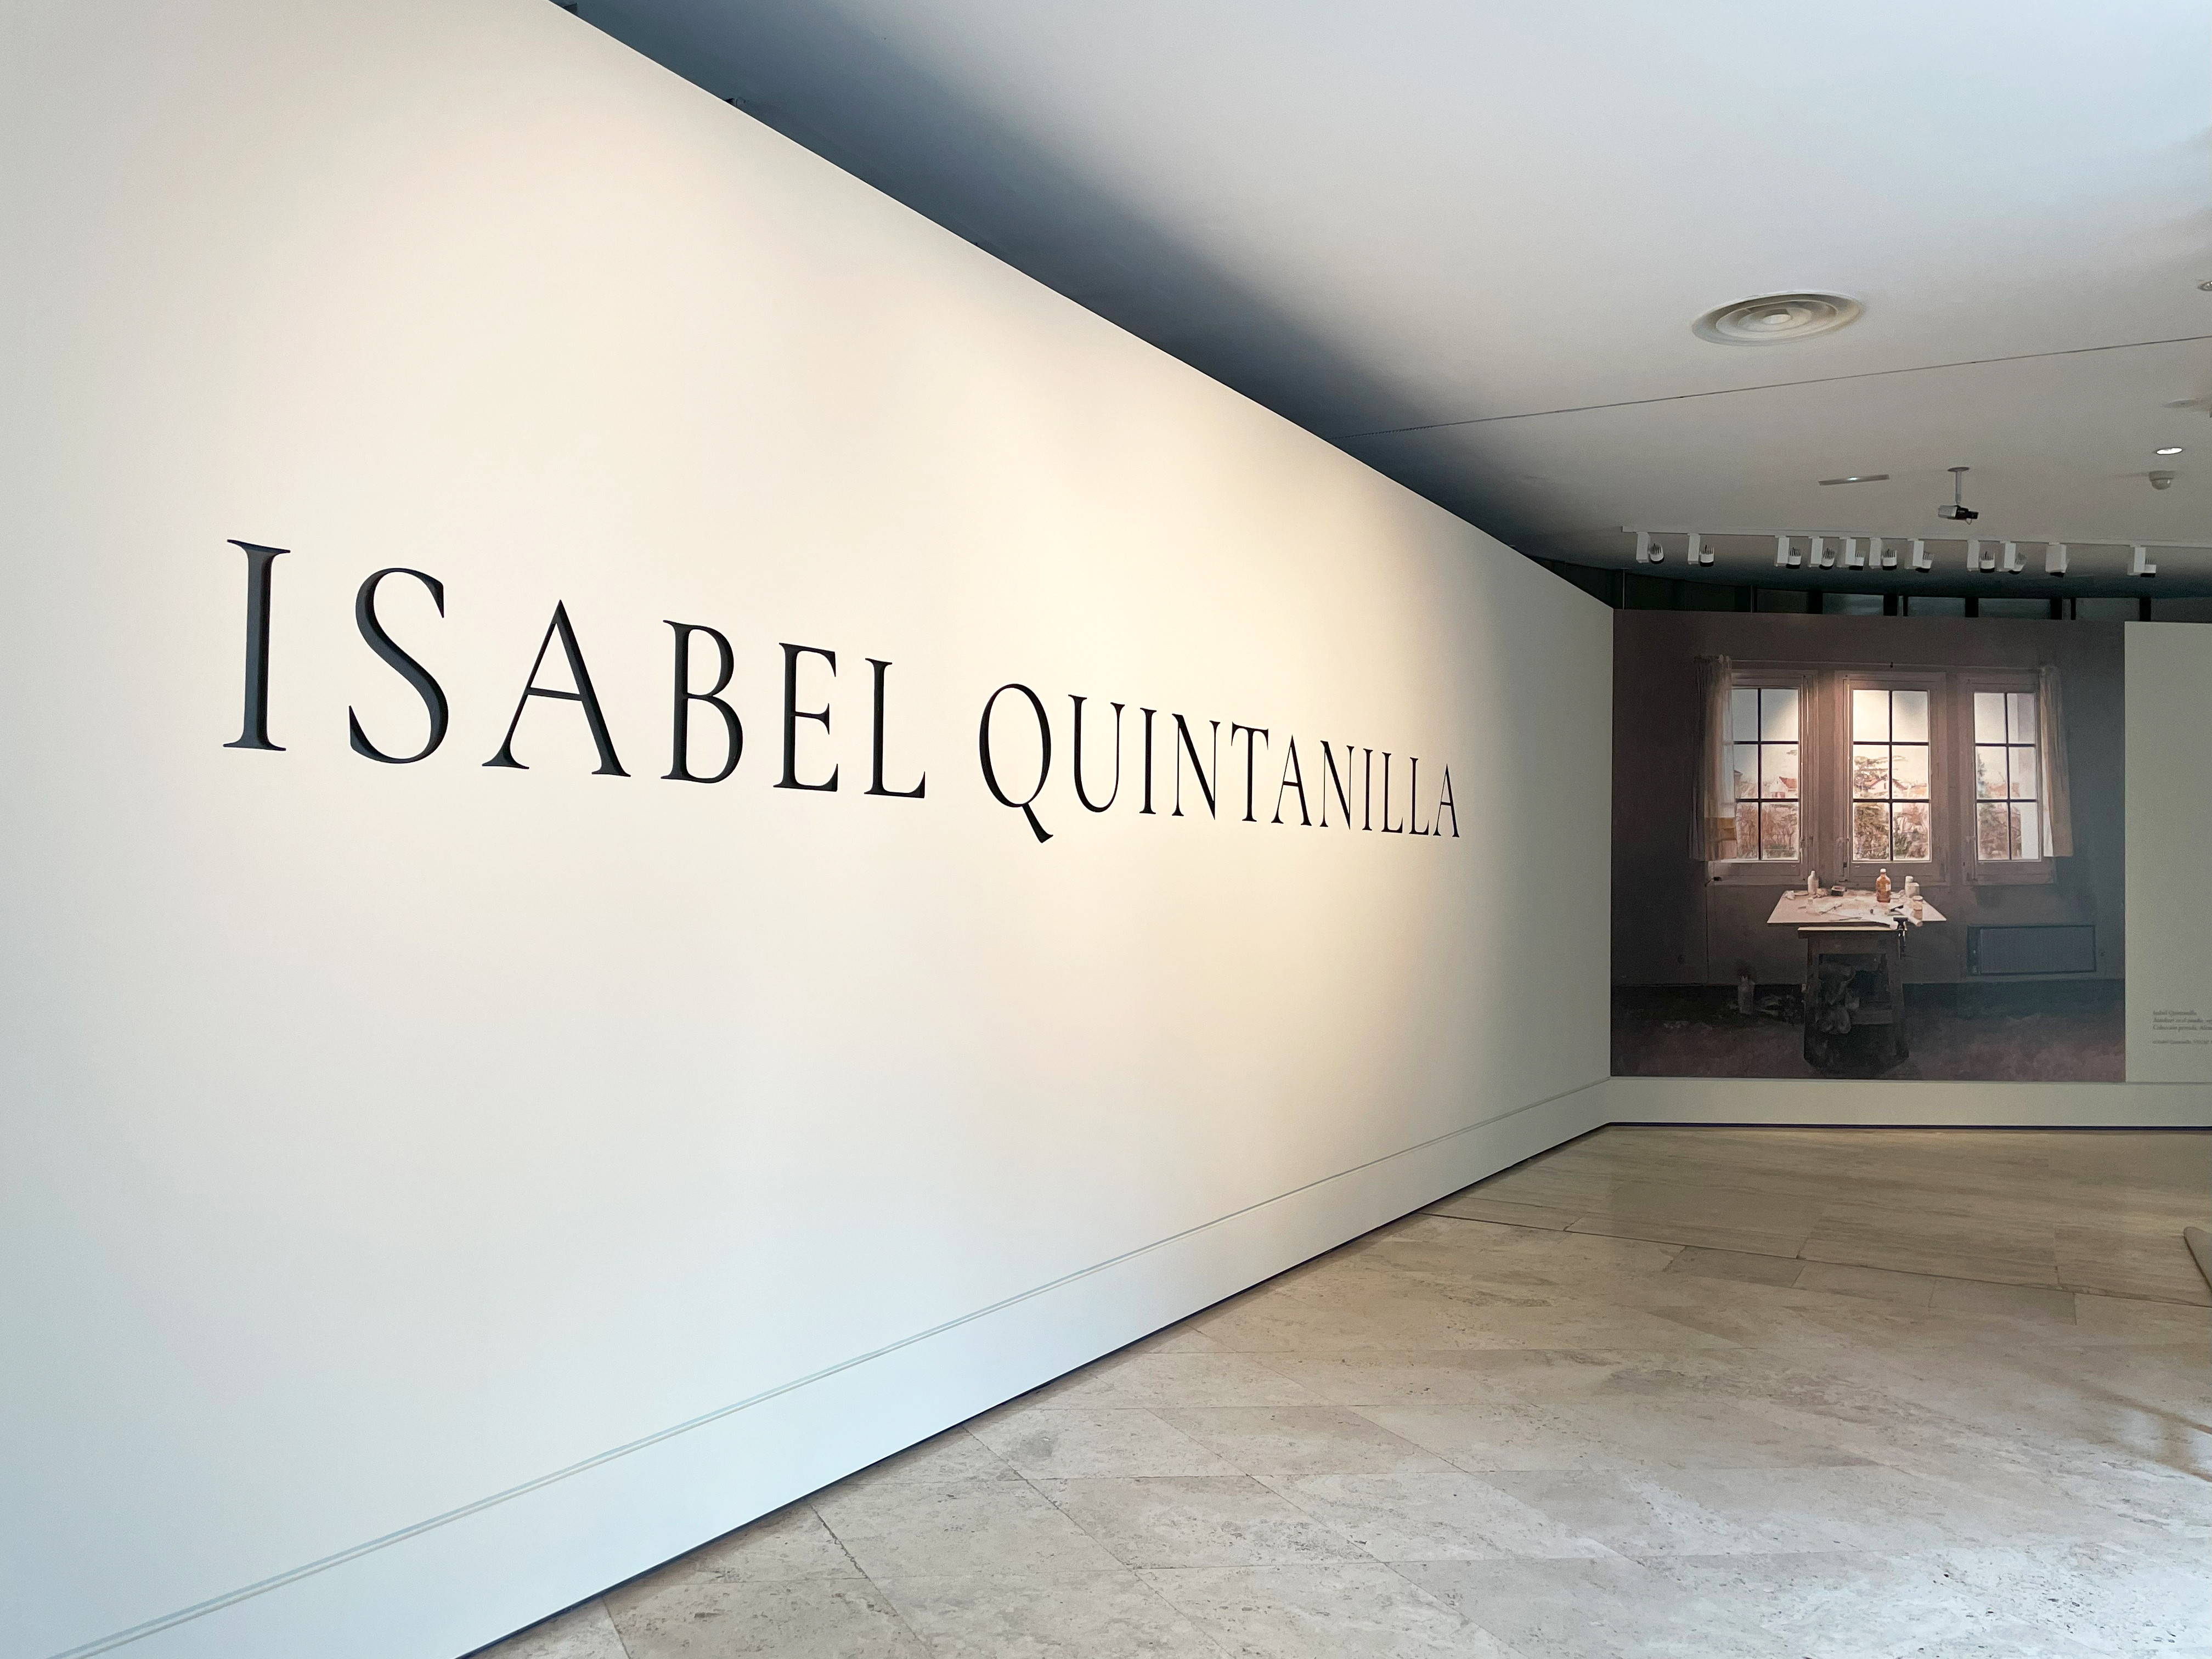 Museo Thyssen on X: "La noche madrileña se traslada al museo: ¡nacen los  Sábados Uniqlo! Cada sábado, de 21.00 a 23.00, abrimos las puertas de  nuestras exposiciones temporales de forma gratuita. Empezamos